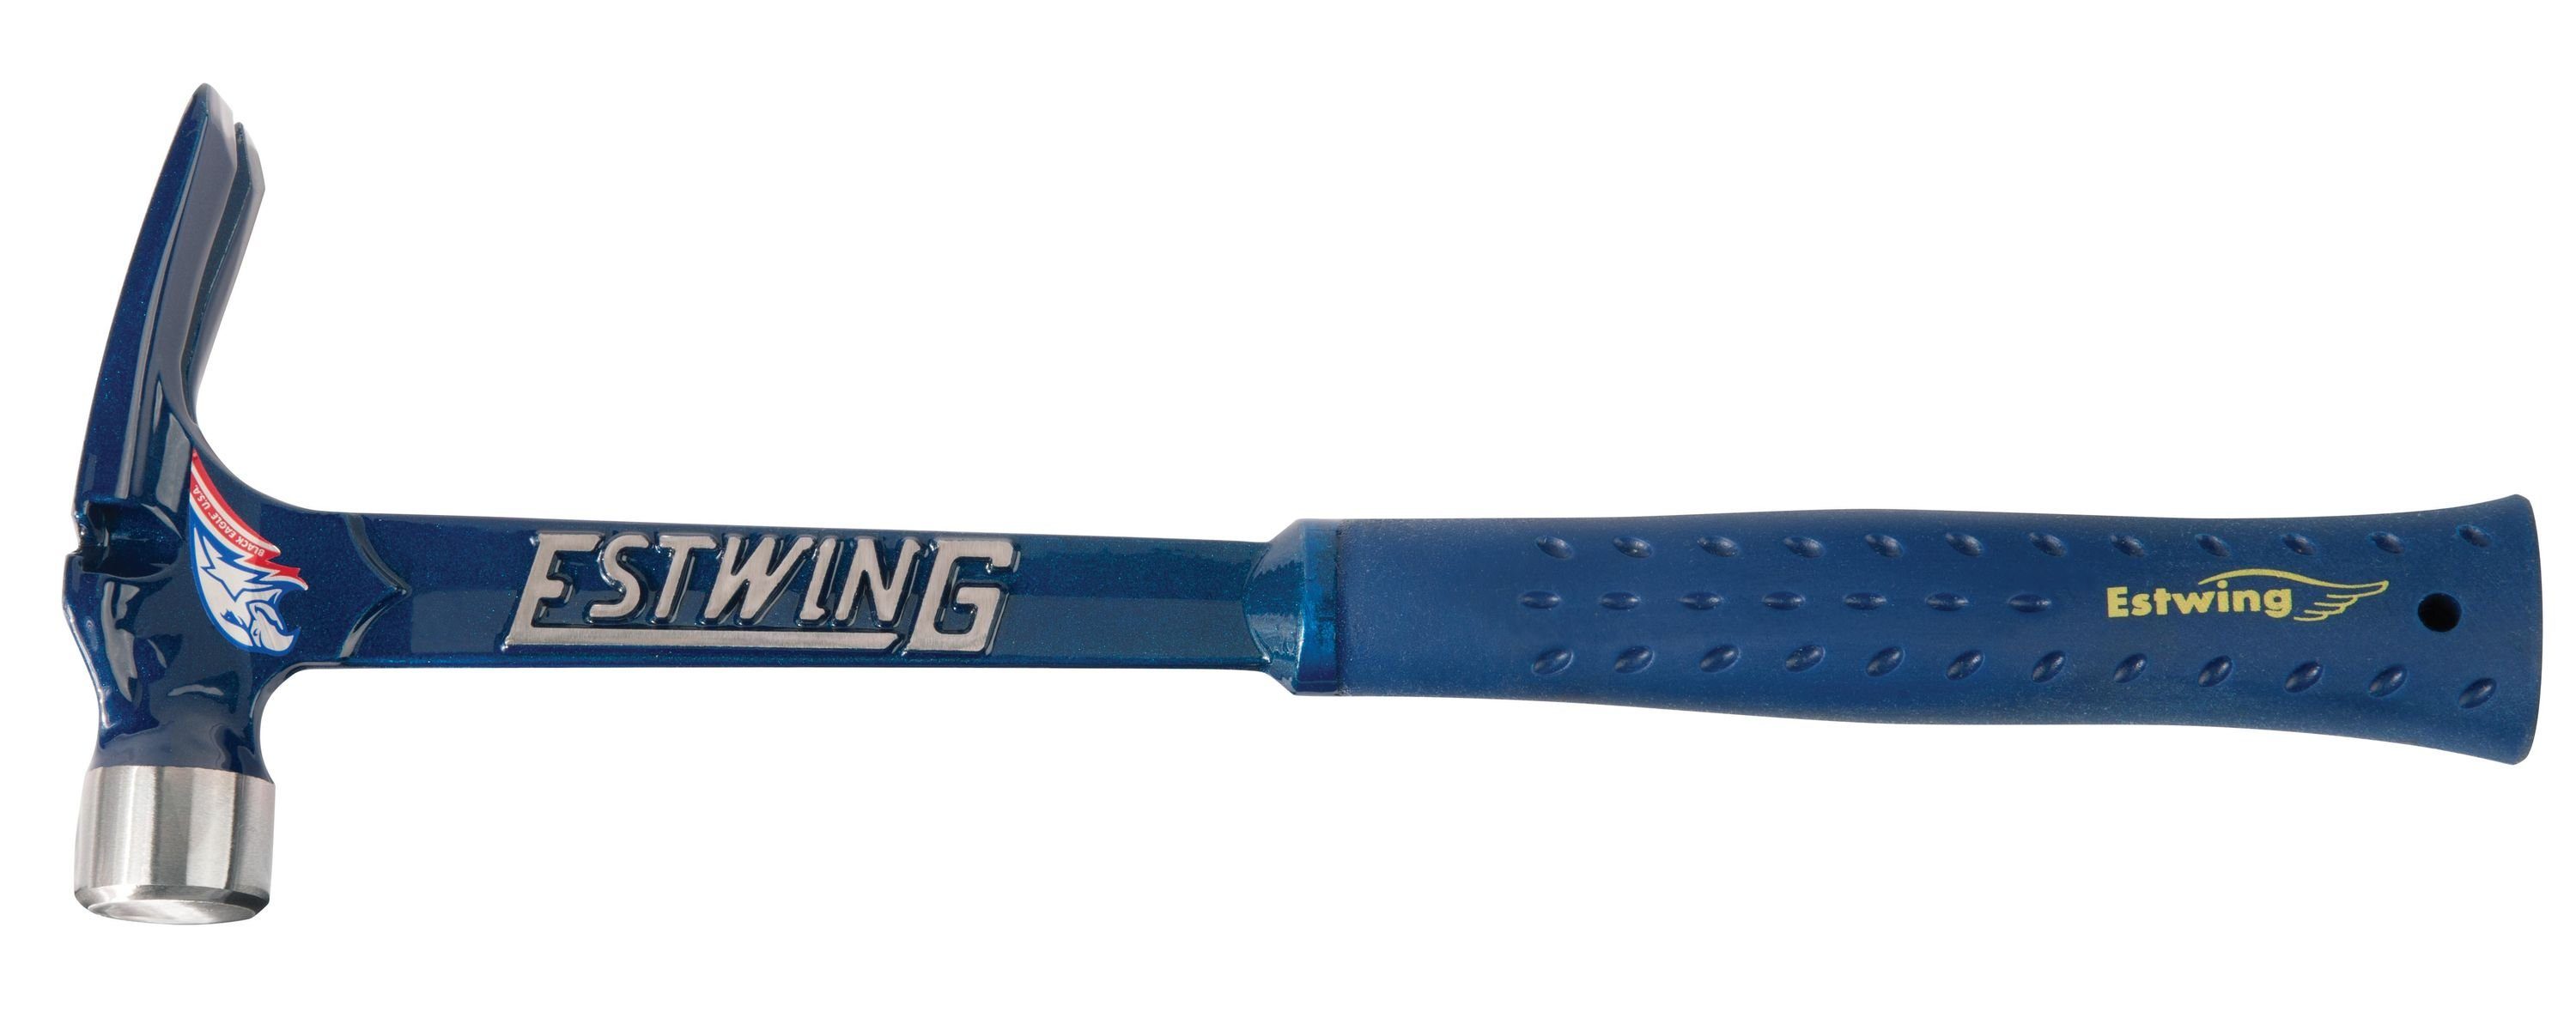 Estwing Hammer Estwing E6/19S Klauenhammer mit Vinyl-Griff, Blau, Kopfg. 530gramm, glatte Bahn